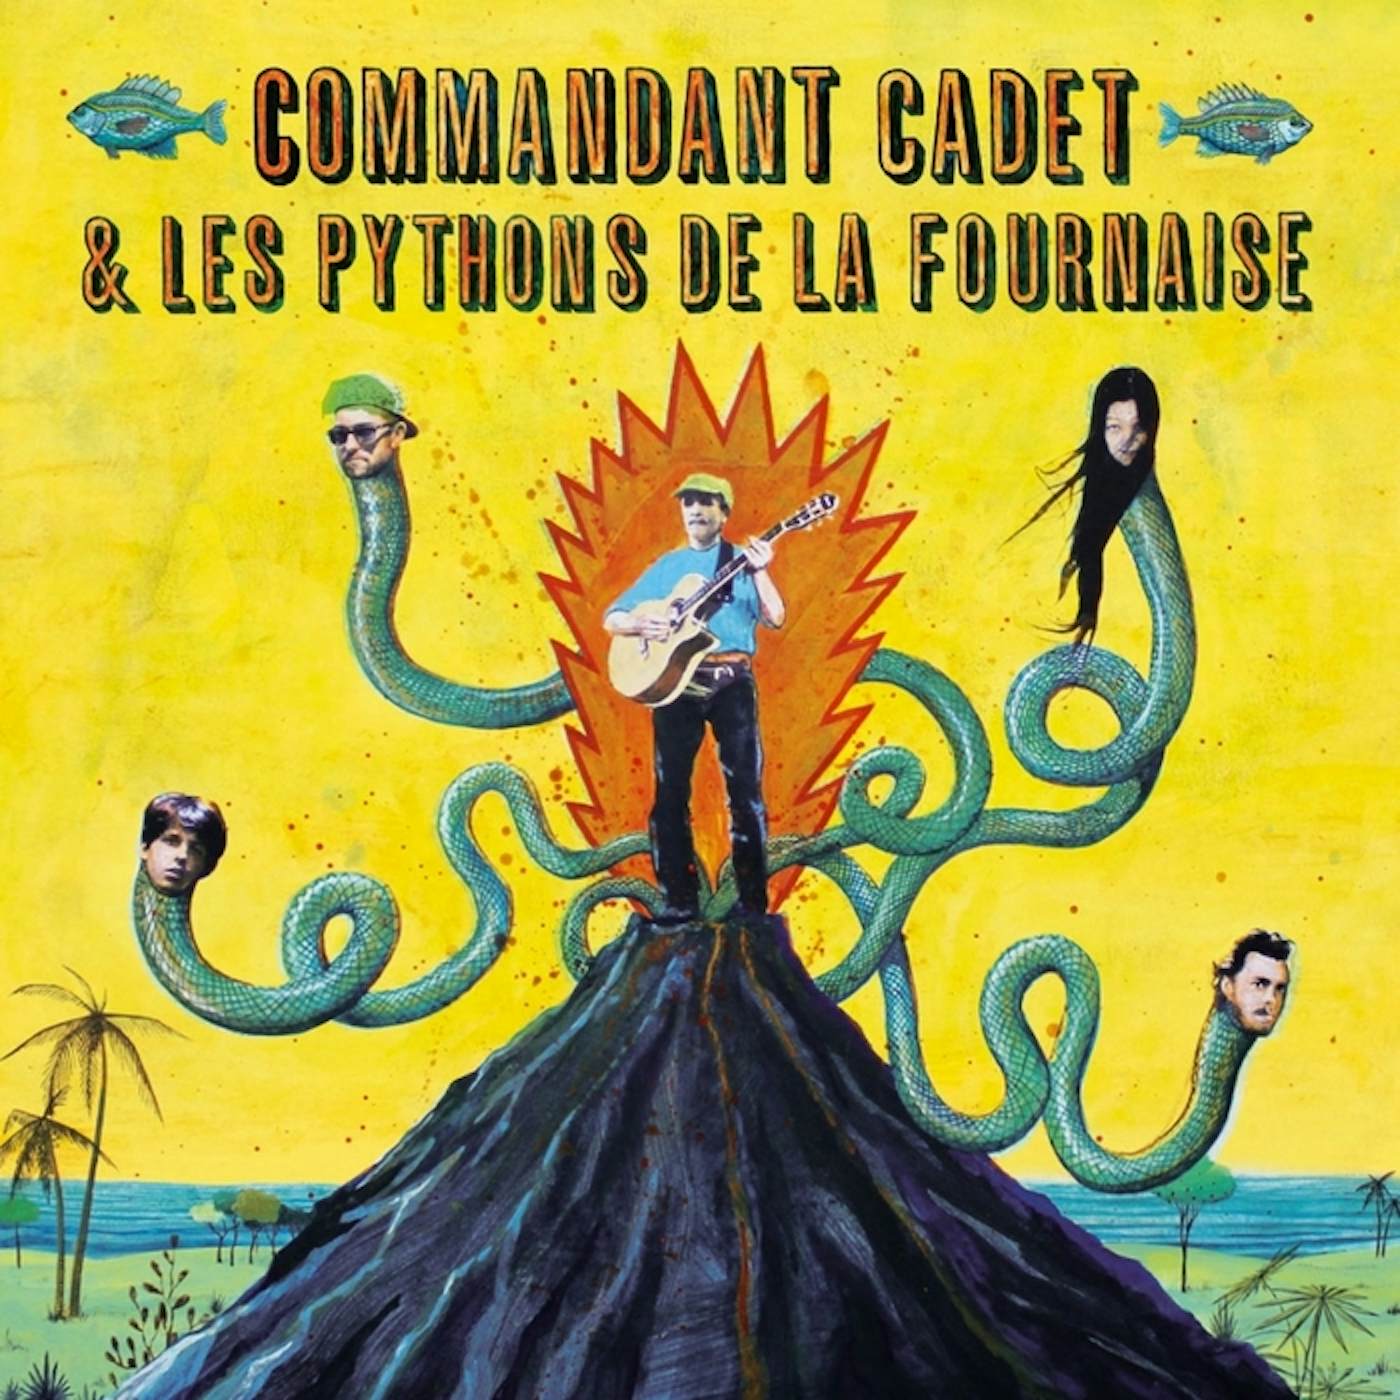 Commandant Cadet & Les Pythons De La Fournaise PREMIE VIRAZ Vinyl Record